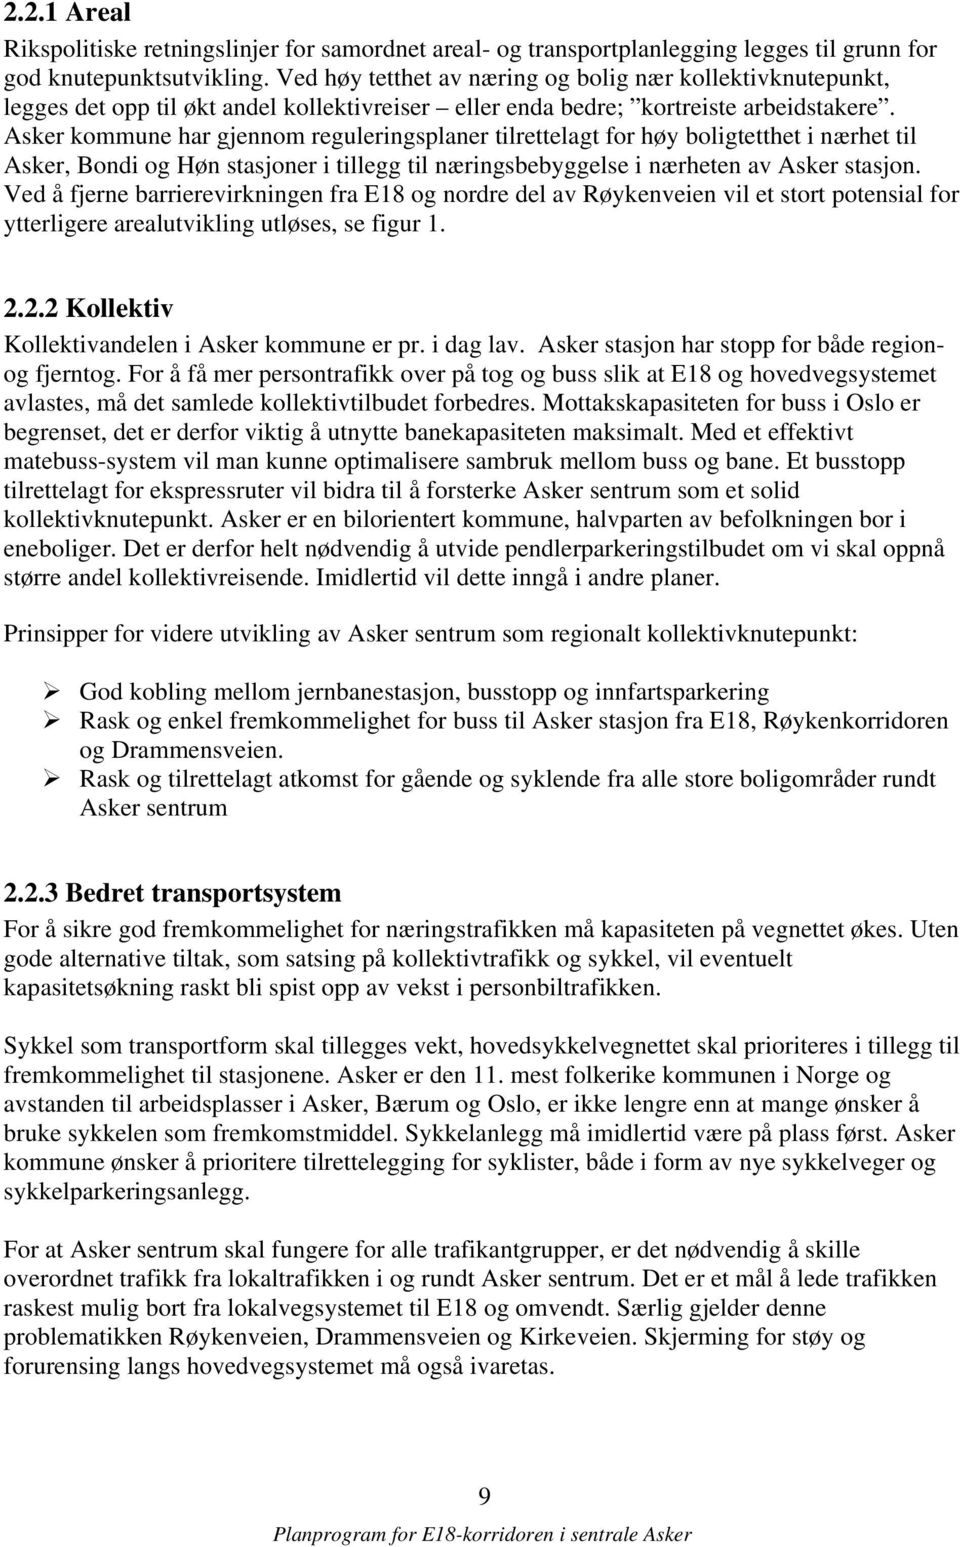 Asker kommune har gjennom reguleringsplaner tilrettelagt for høy boligtetthet i nærhet til Asker, Bondi og Høn stasjoner i tillegg til næringsbebyggelse i nærheten av Asker stasjon.